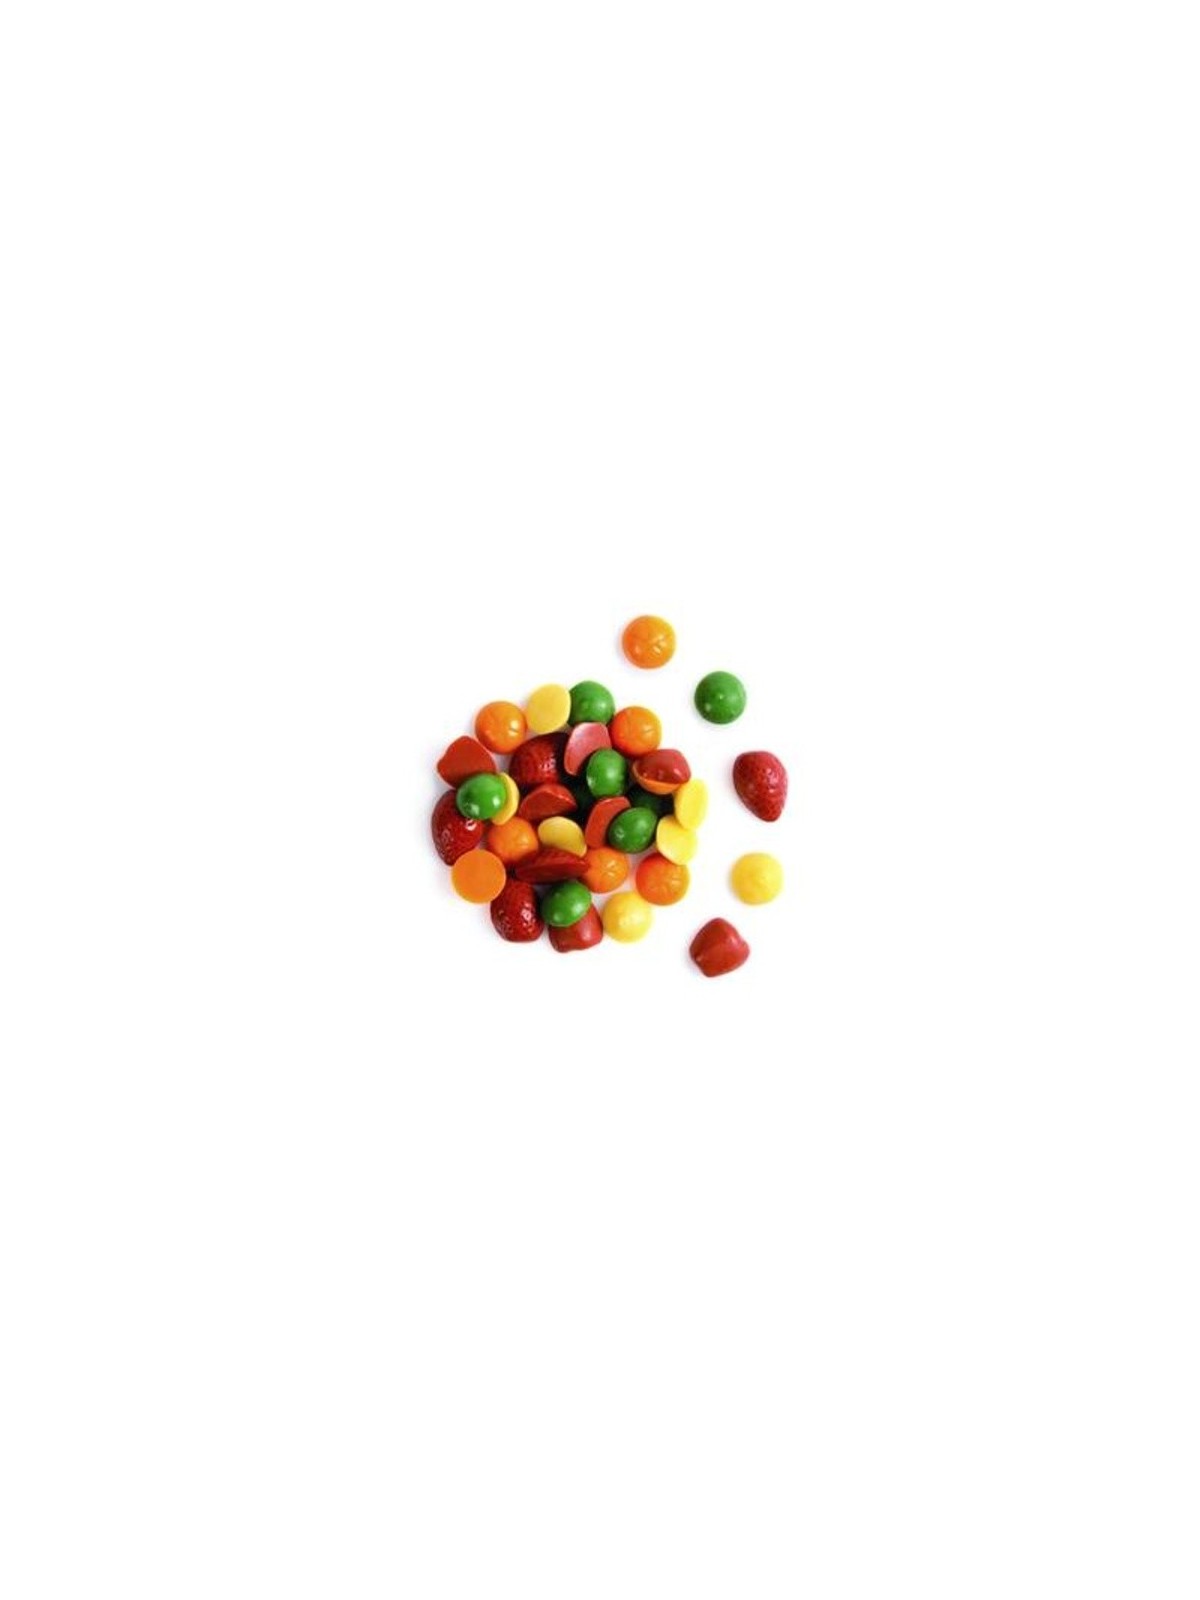 Čokoládová dekorace - mini ovoce barevné - 50g